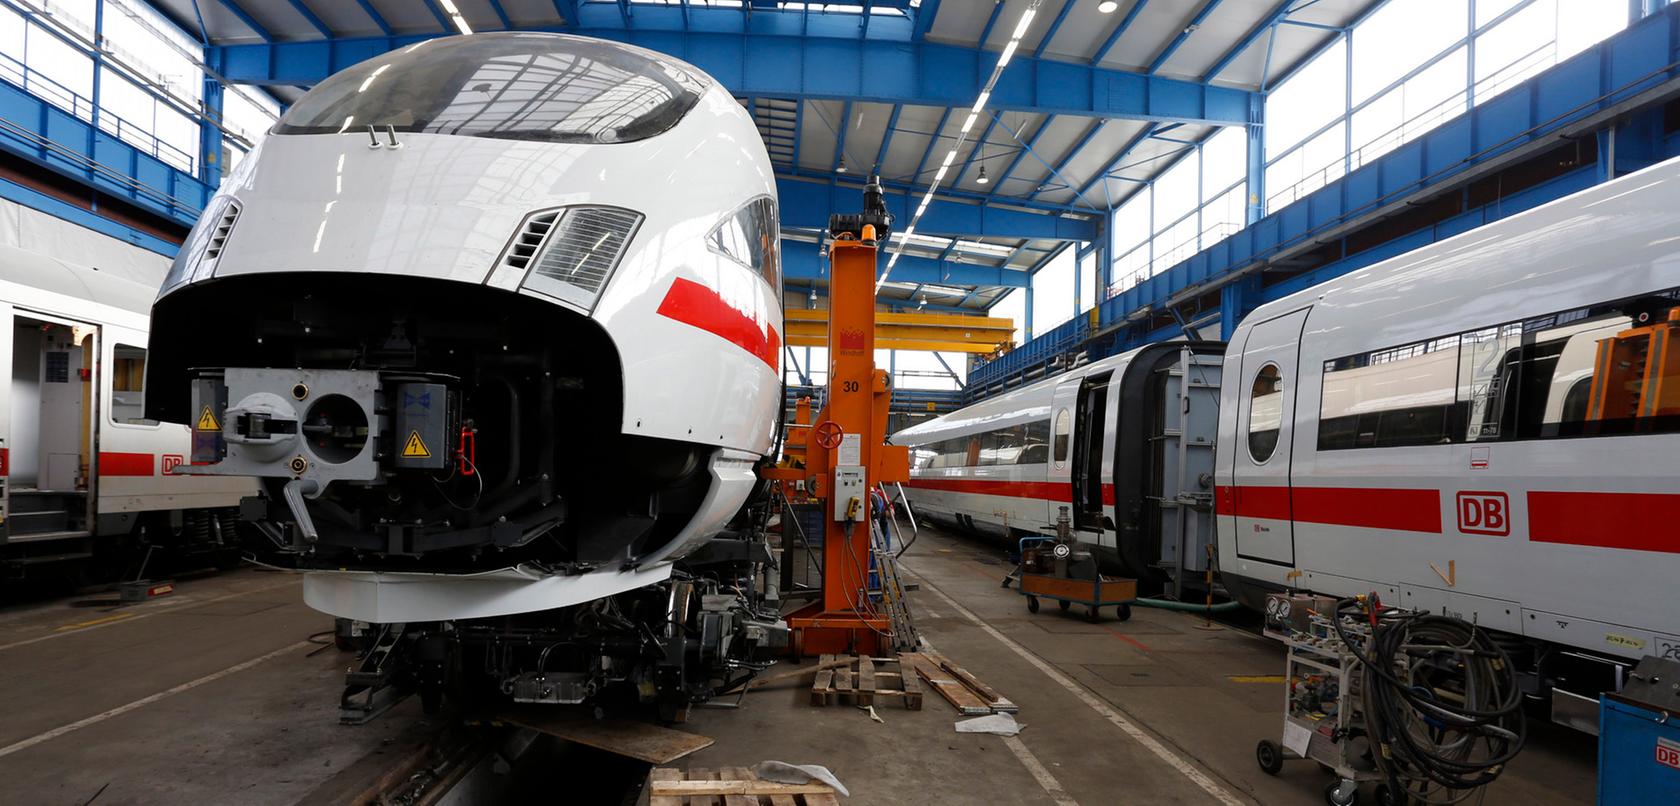 Insgesamt 42 ICE- Züge werden im Nürnberger Ausbesserungswerk derzeit modernisiert.